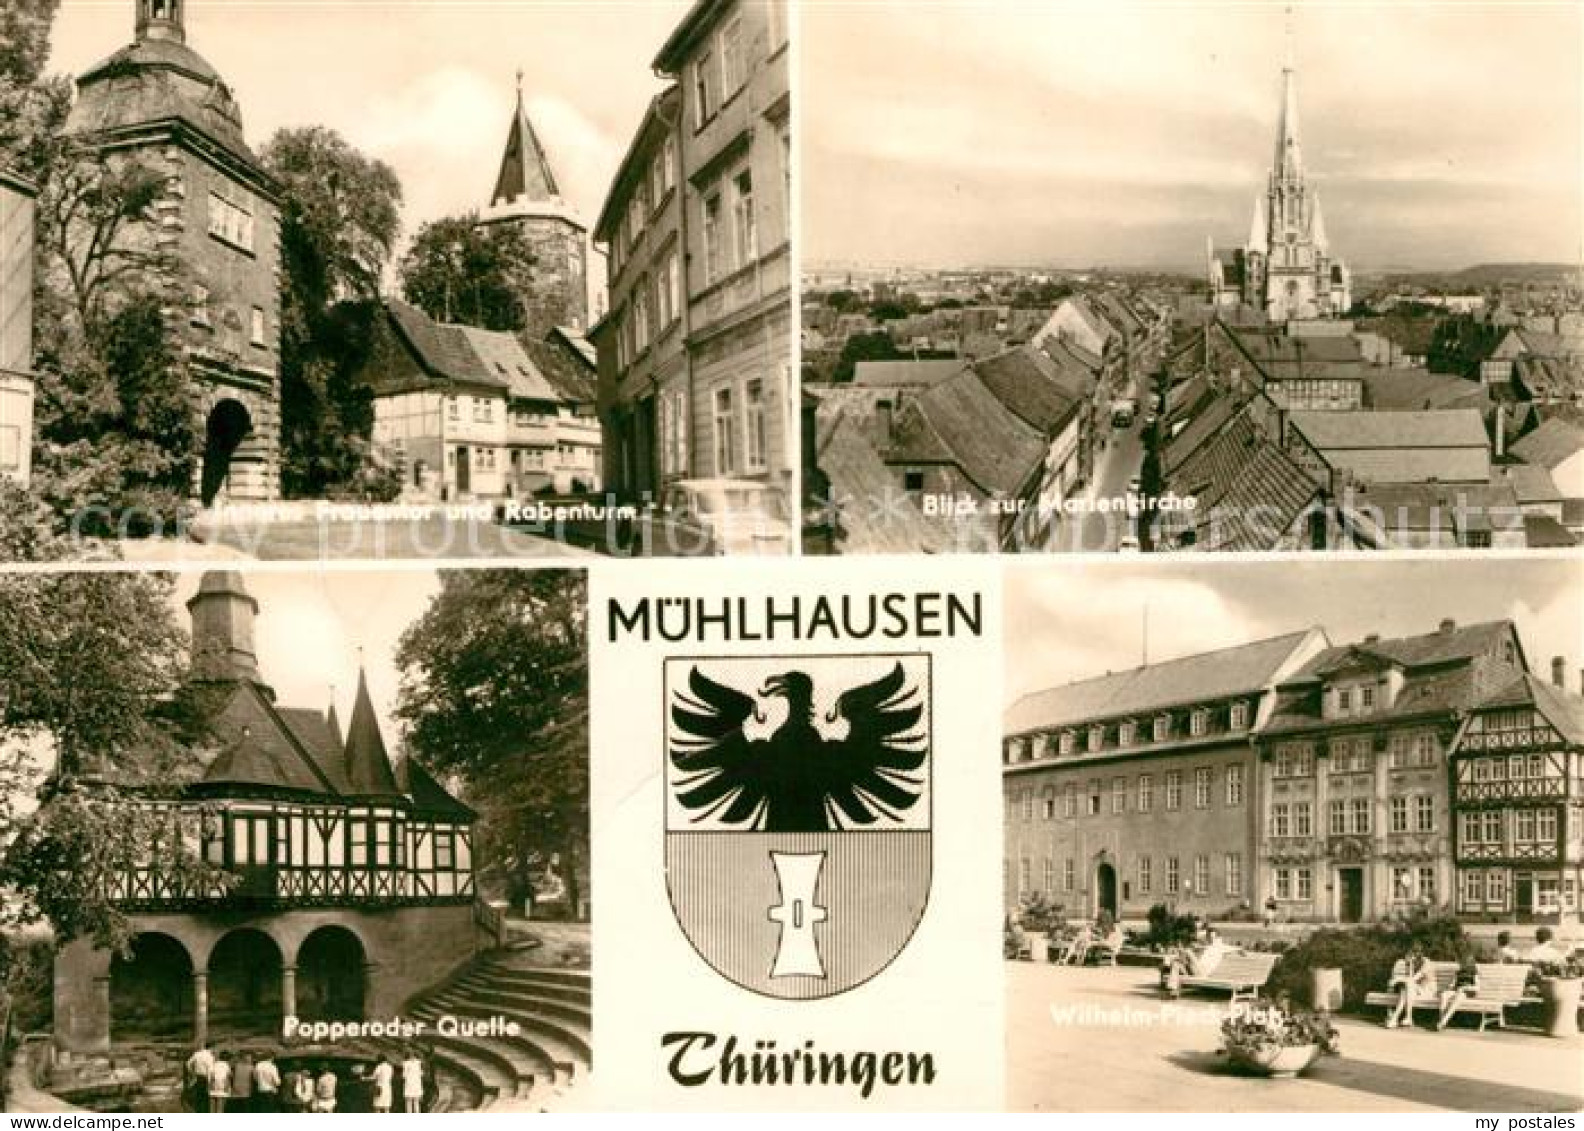 73126873 Muehlhausen Thueringen Popperoder Quelle Marienkirche Rabenturm Muehlha - Muehlhausen